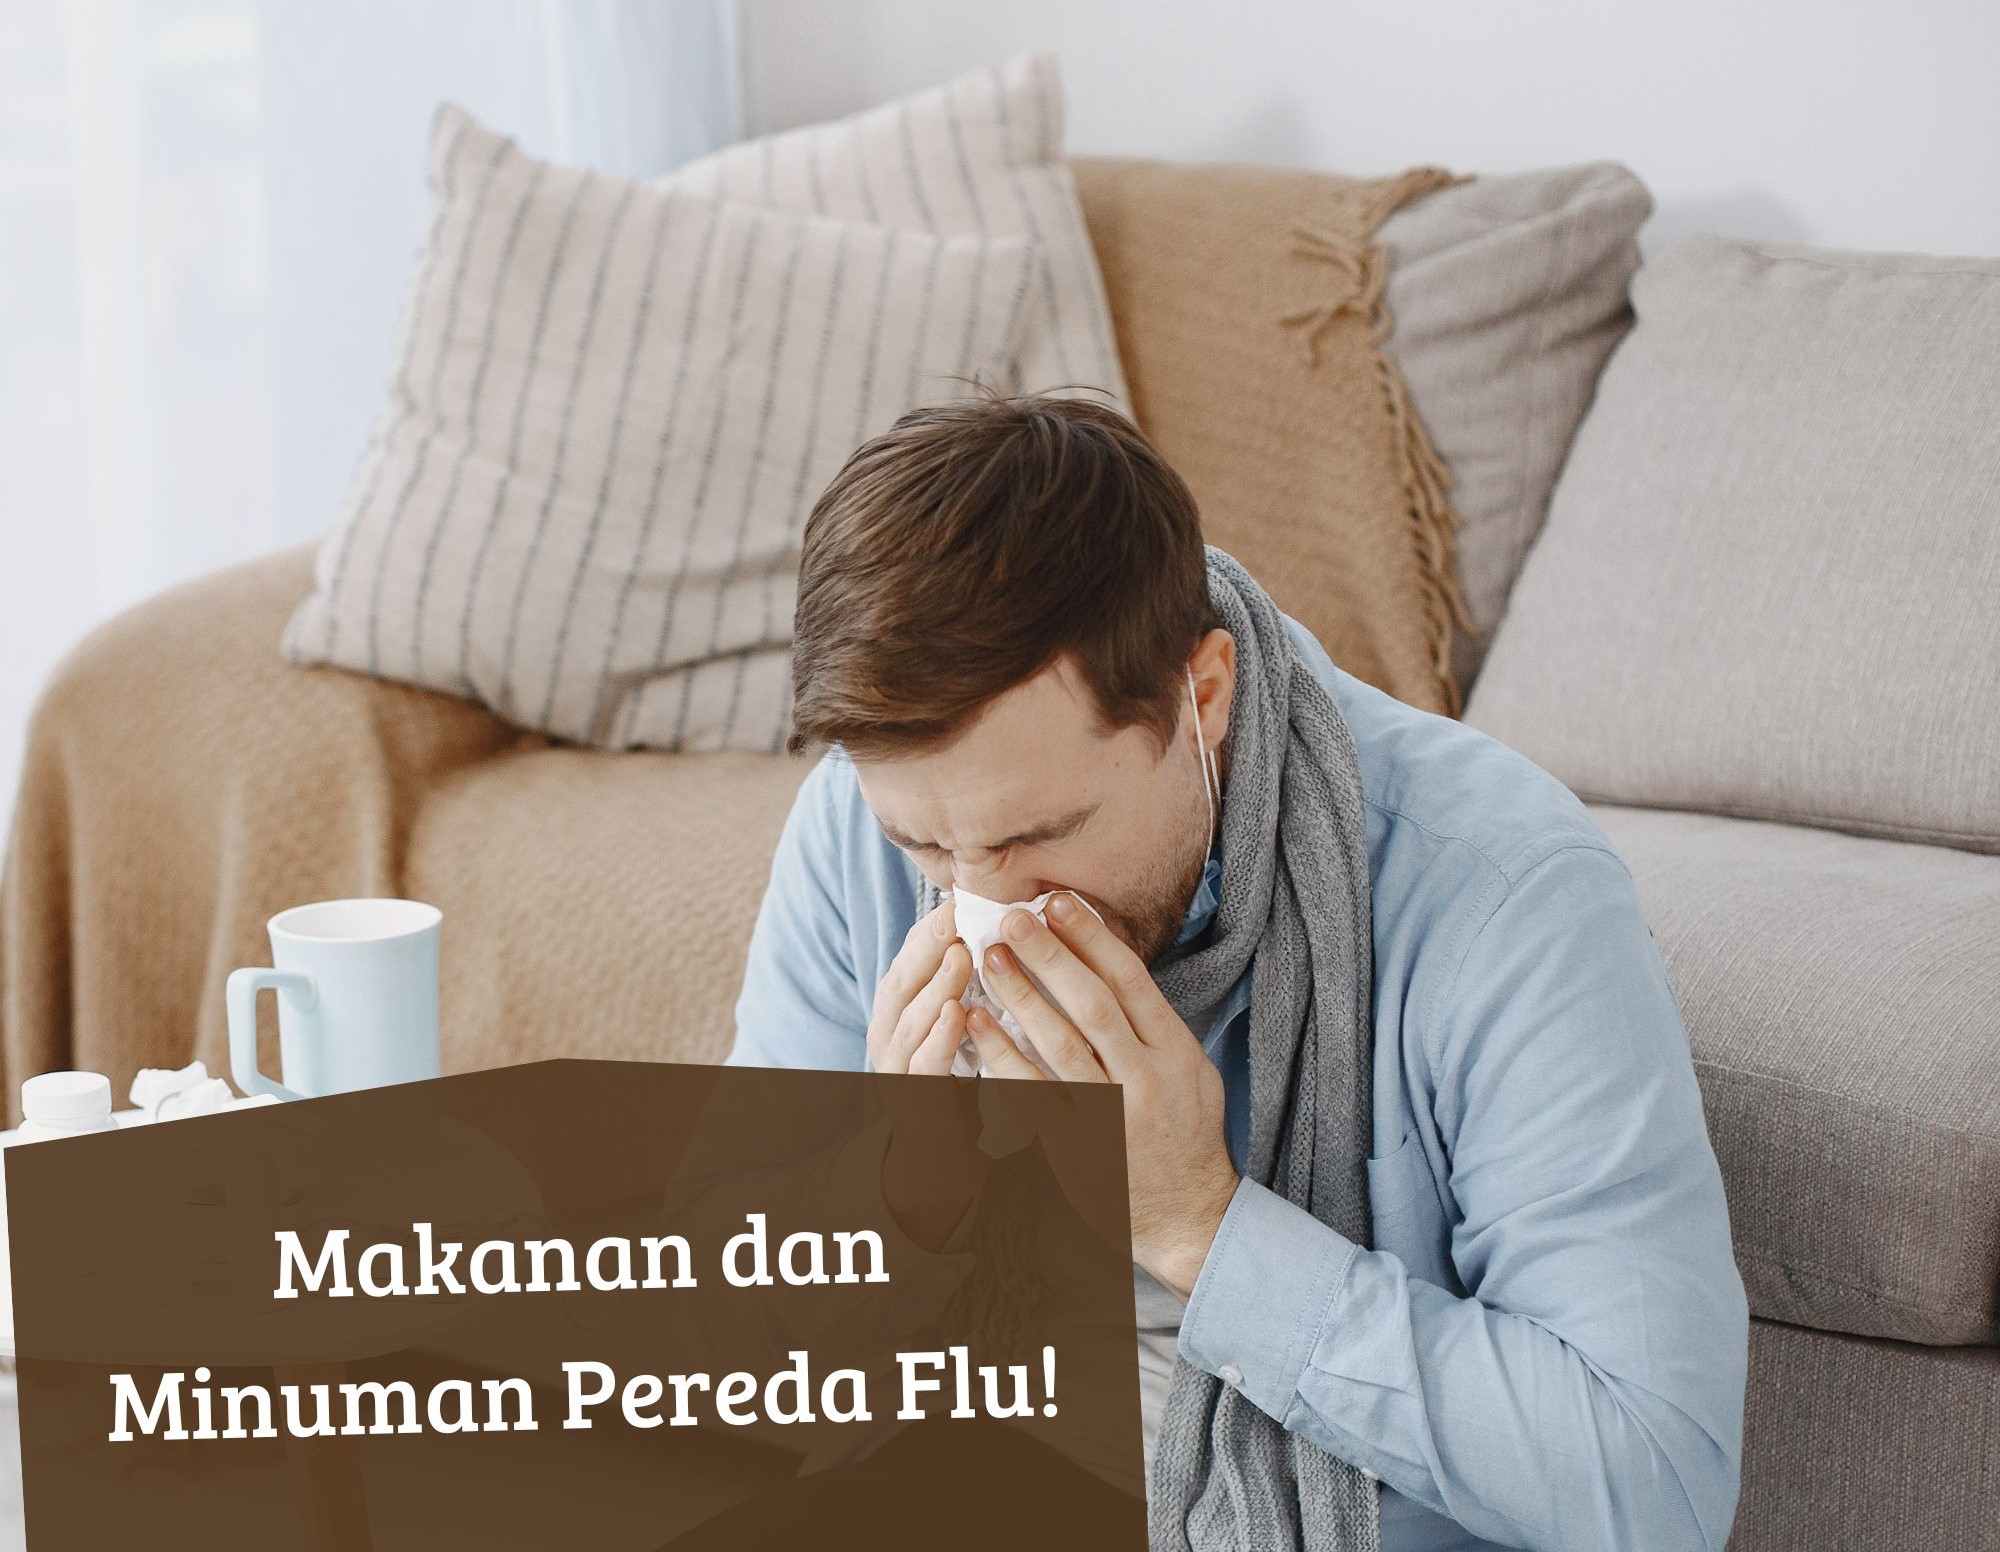 Ampuh Meredakan Flu, Coba Konsumsi Makanan dan Minuman Ini! Kesehatanmu Dijamin Pulih